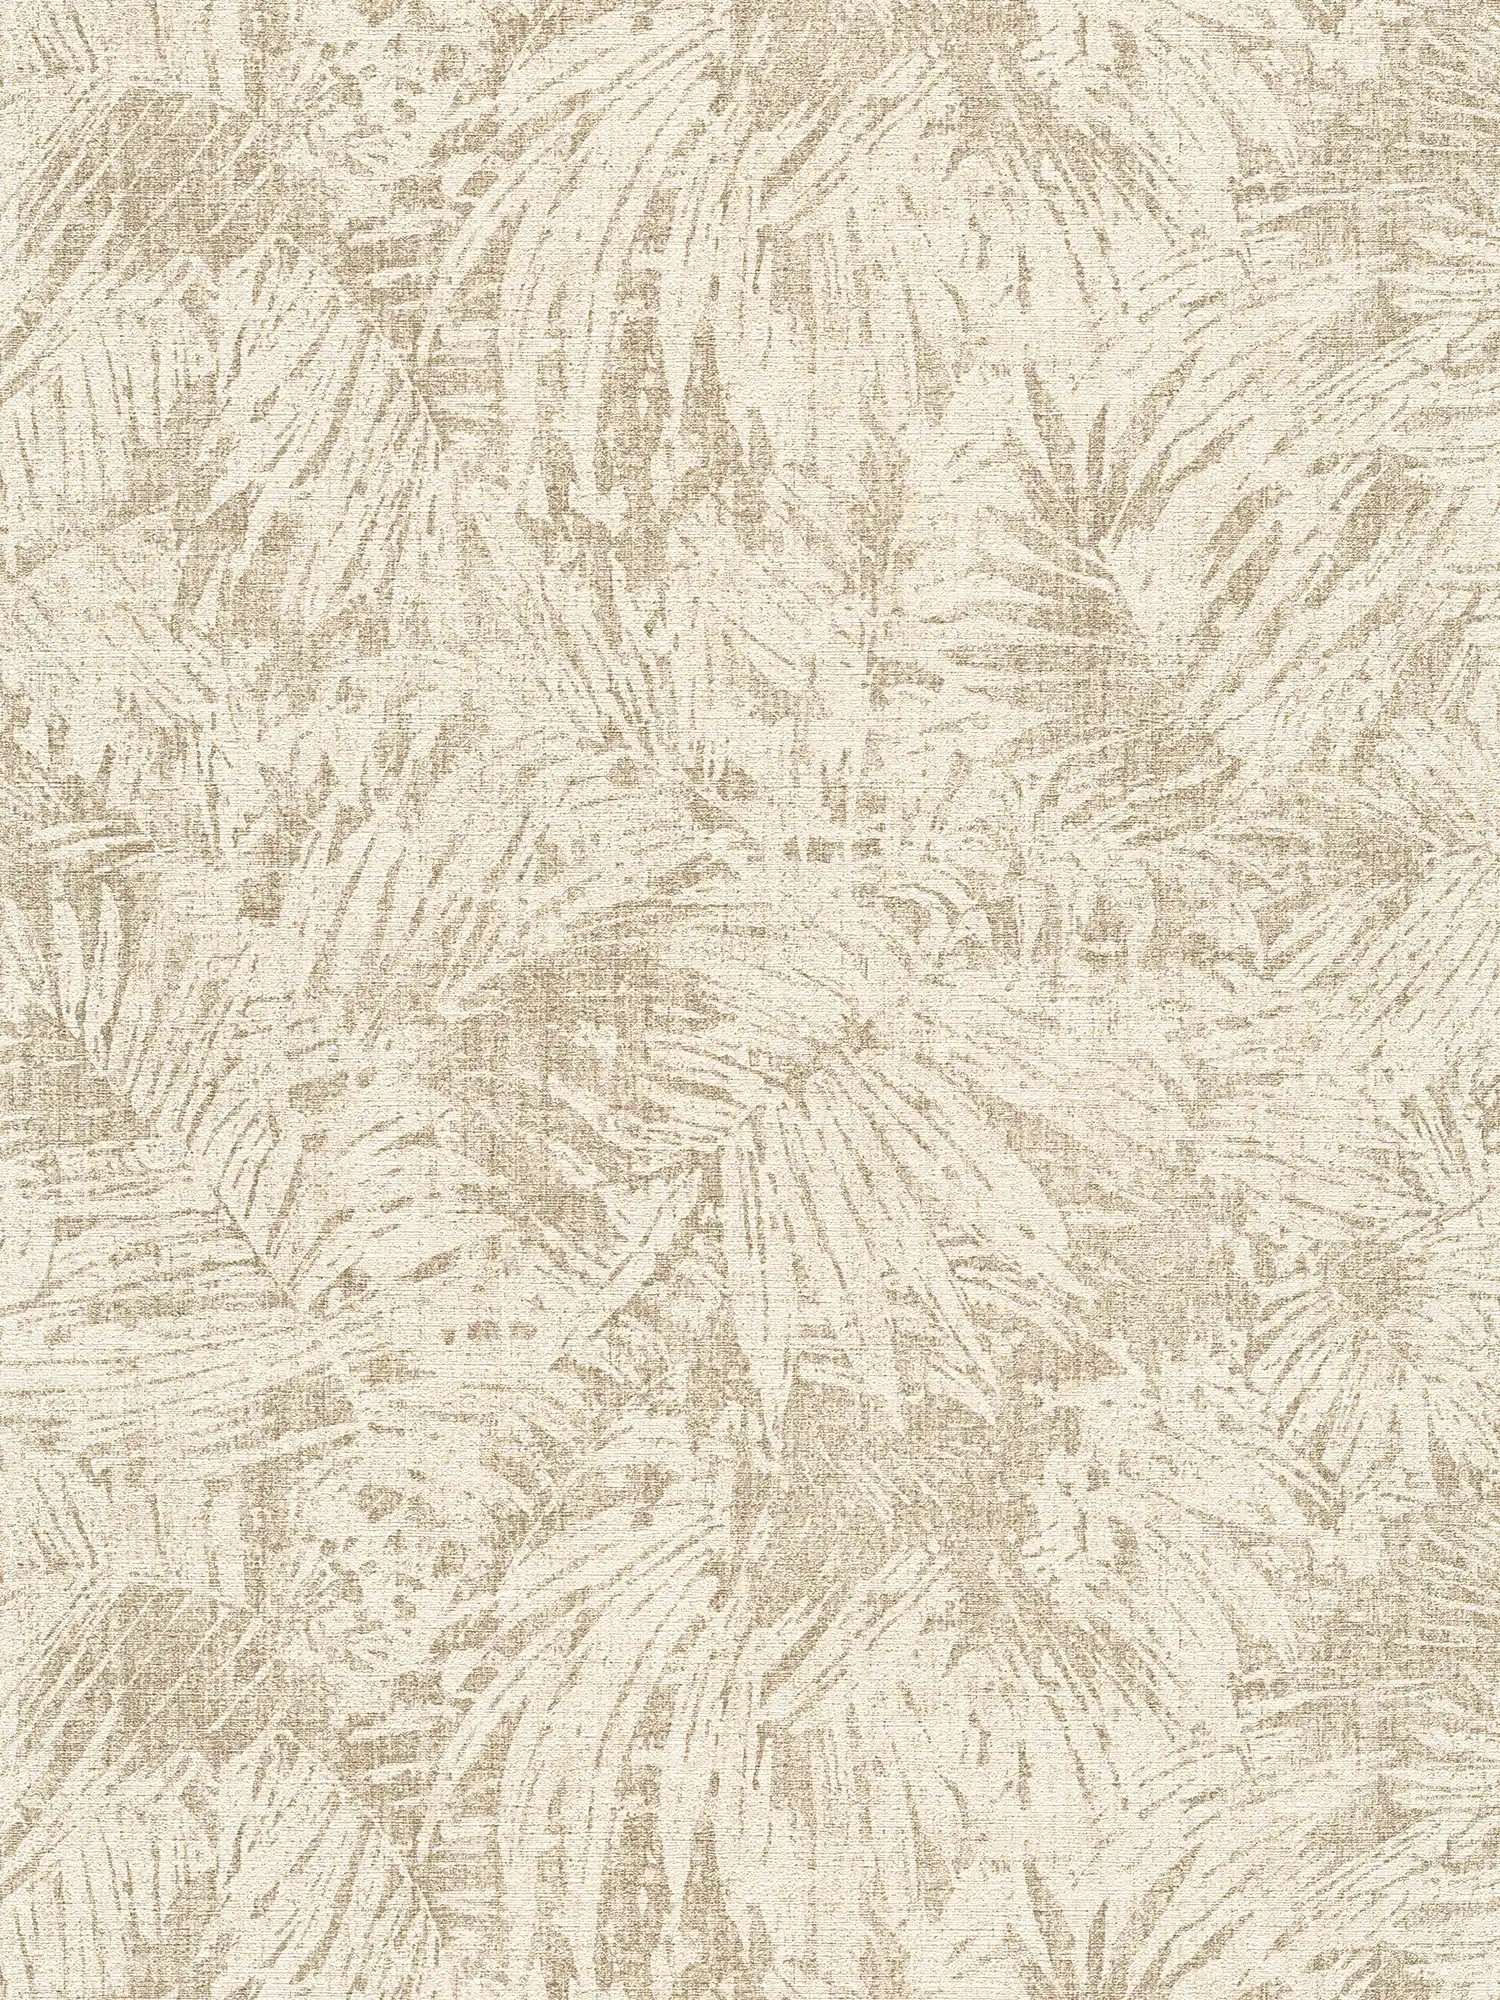 Tapete Blätter Muster & Leineneffekt im Kolonial Stil – Braun, Beige
